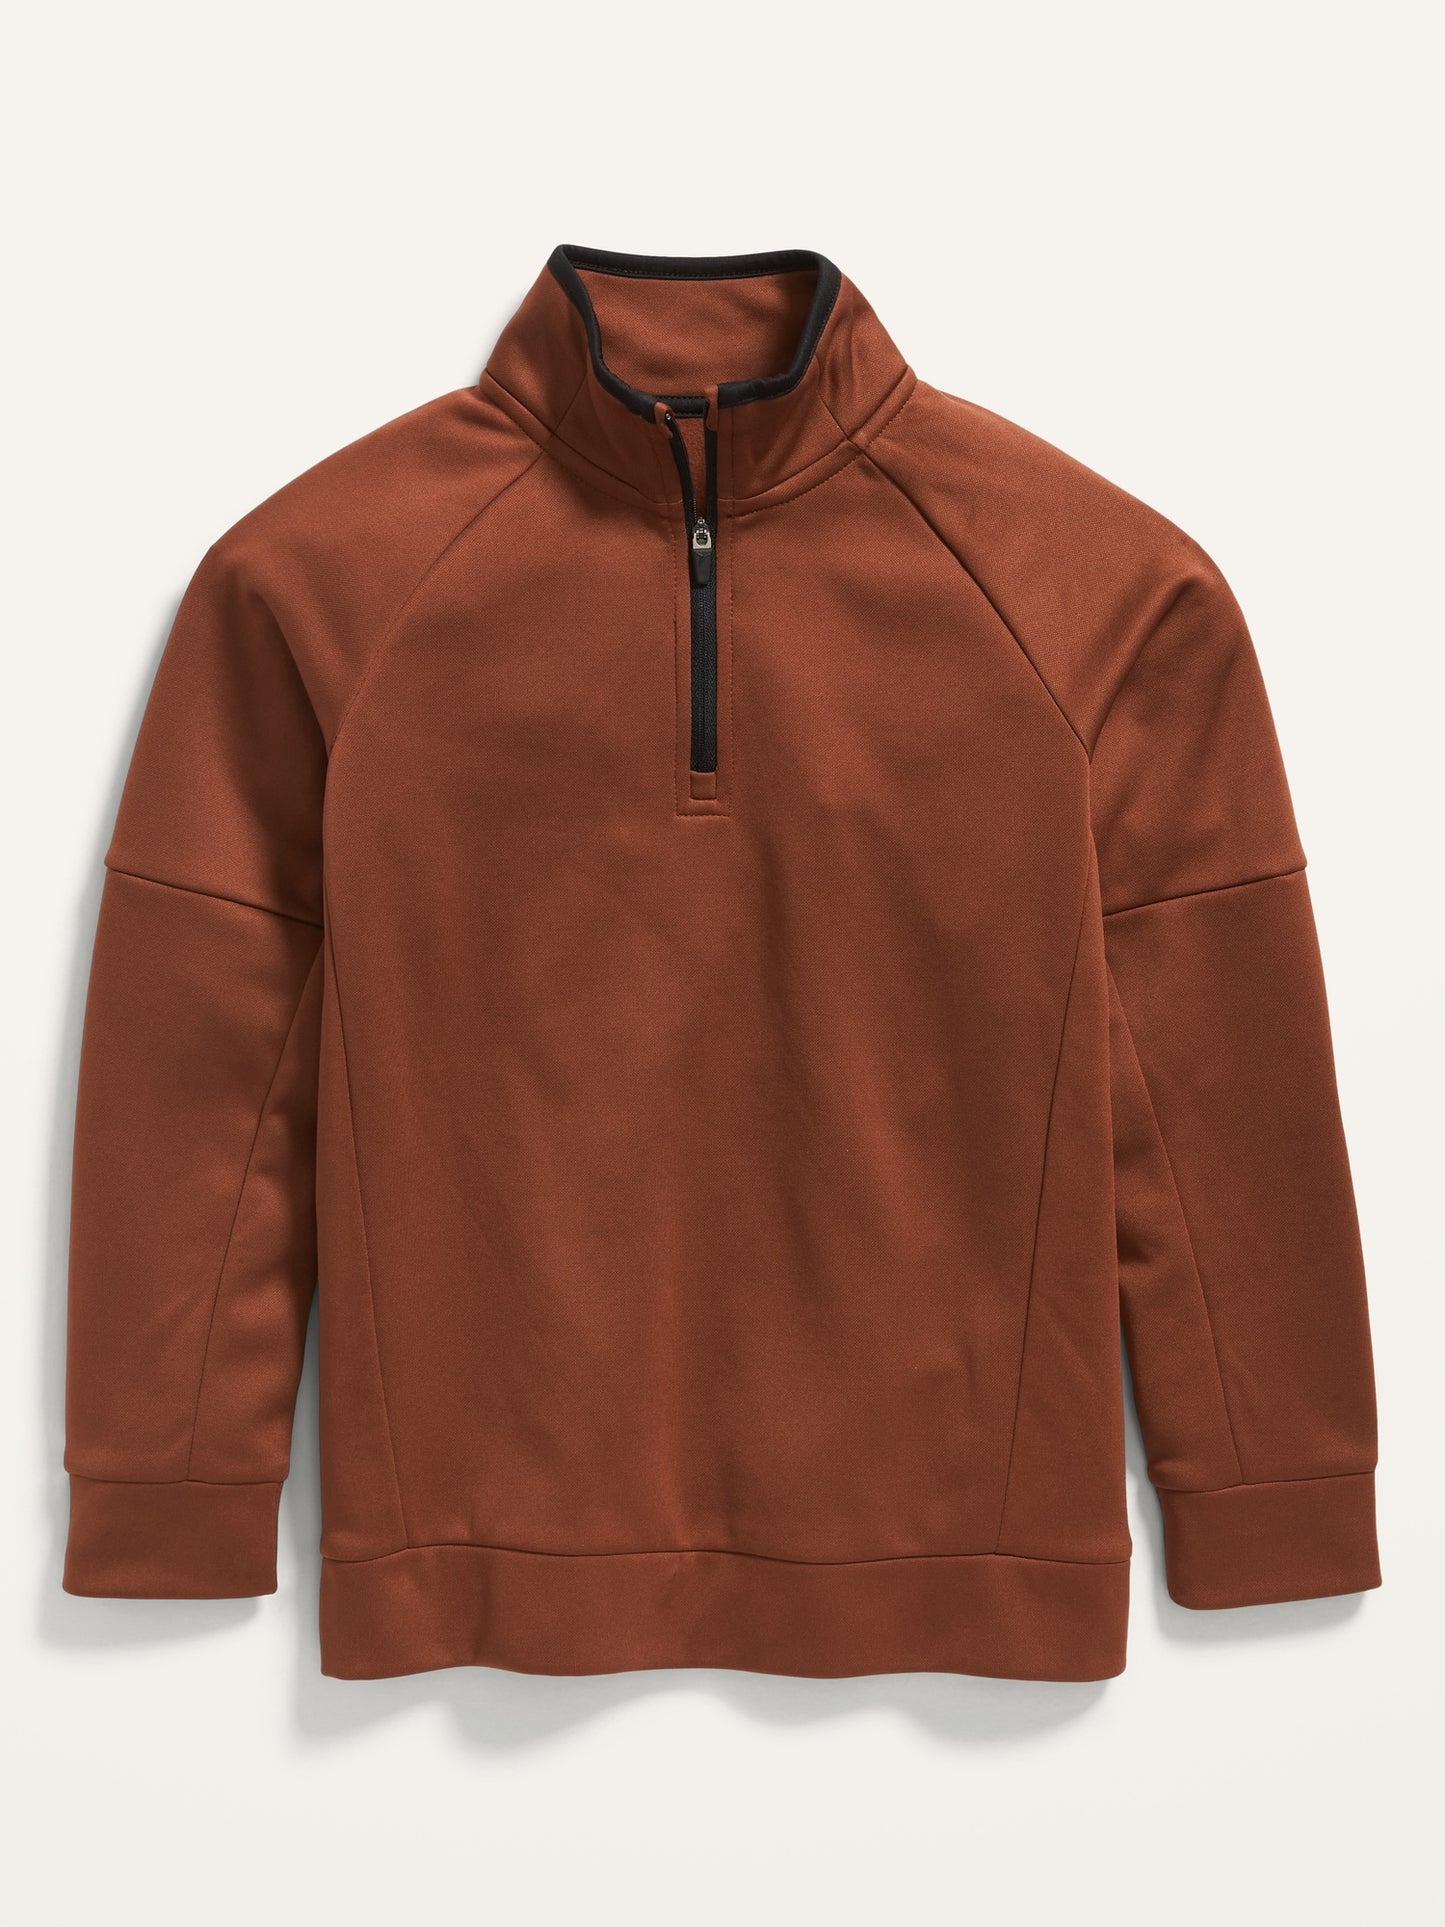 ON Techie Fleece Quarter-Zip Sweatshirt For Boys - Dusty Red